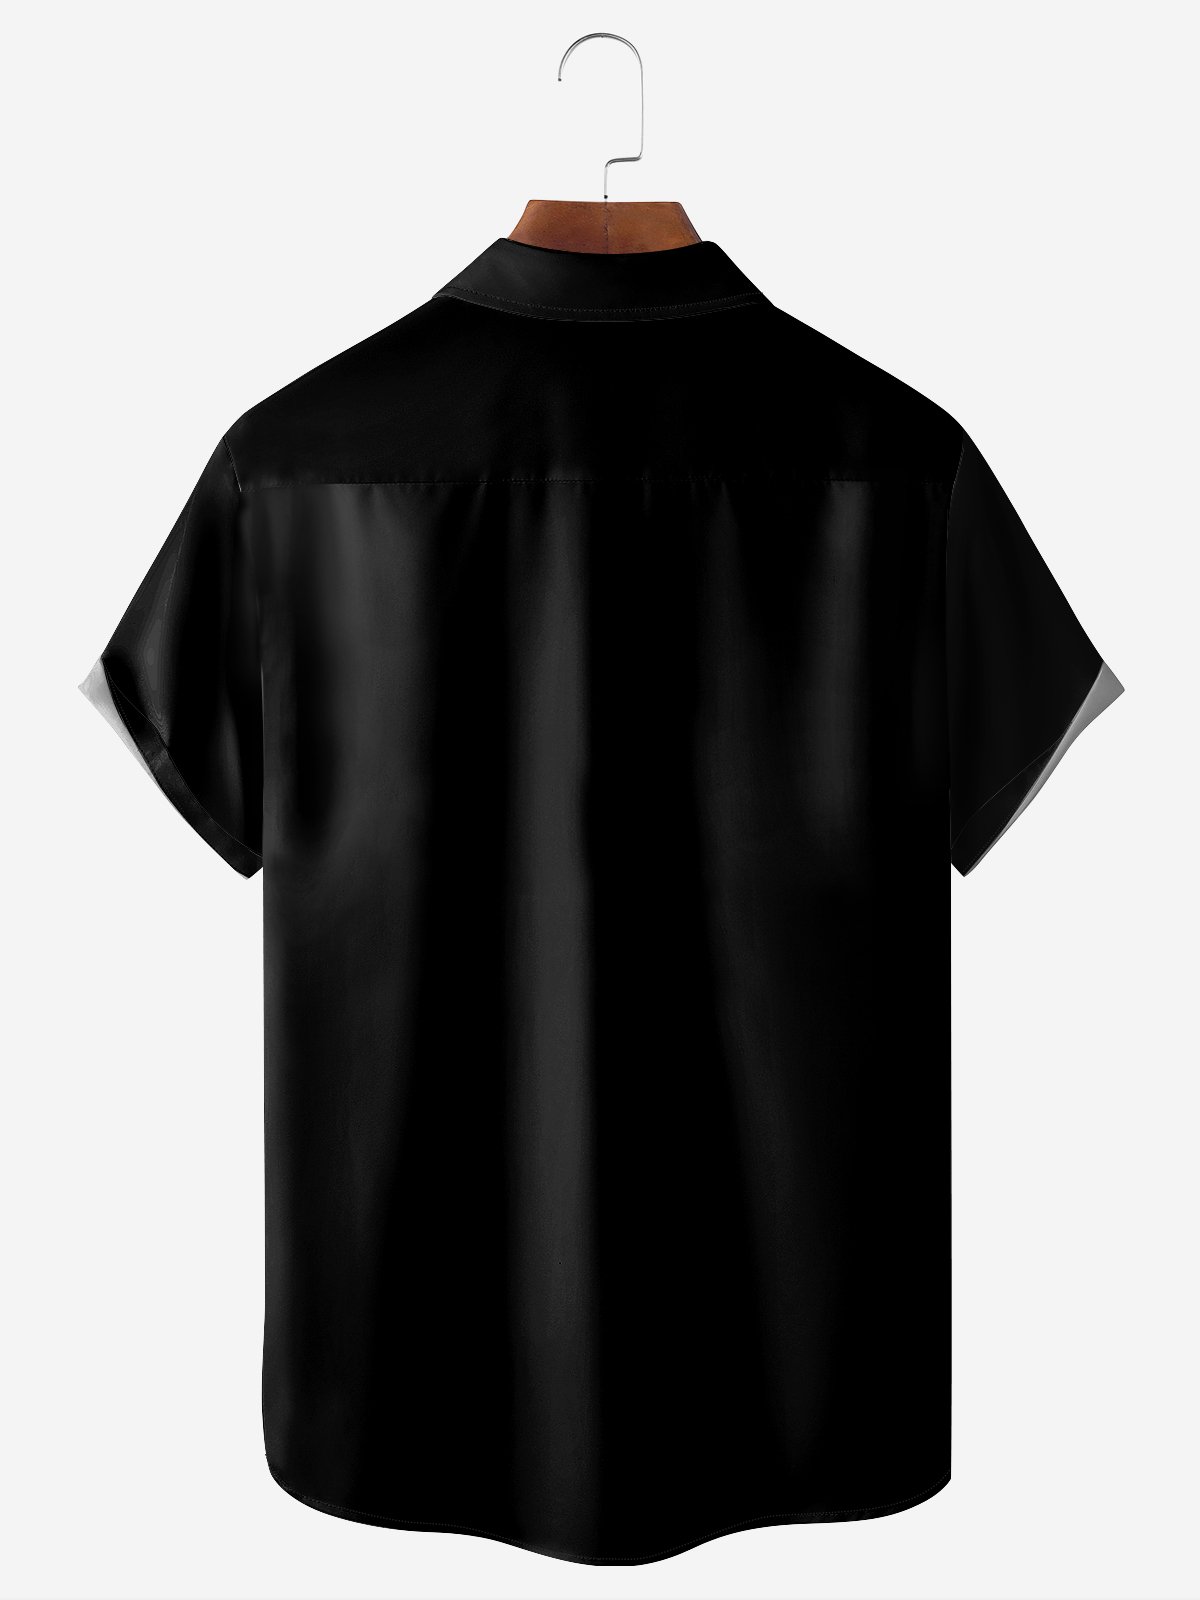 Hardaddy Retro Abstract Chest Pocket Short Sleeve Hawaiian Shirt